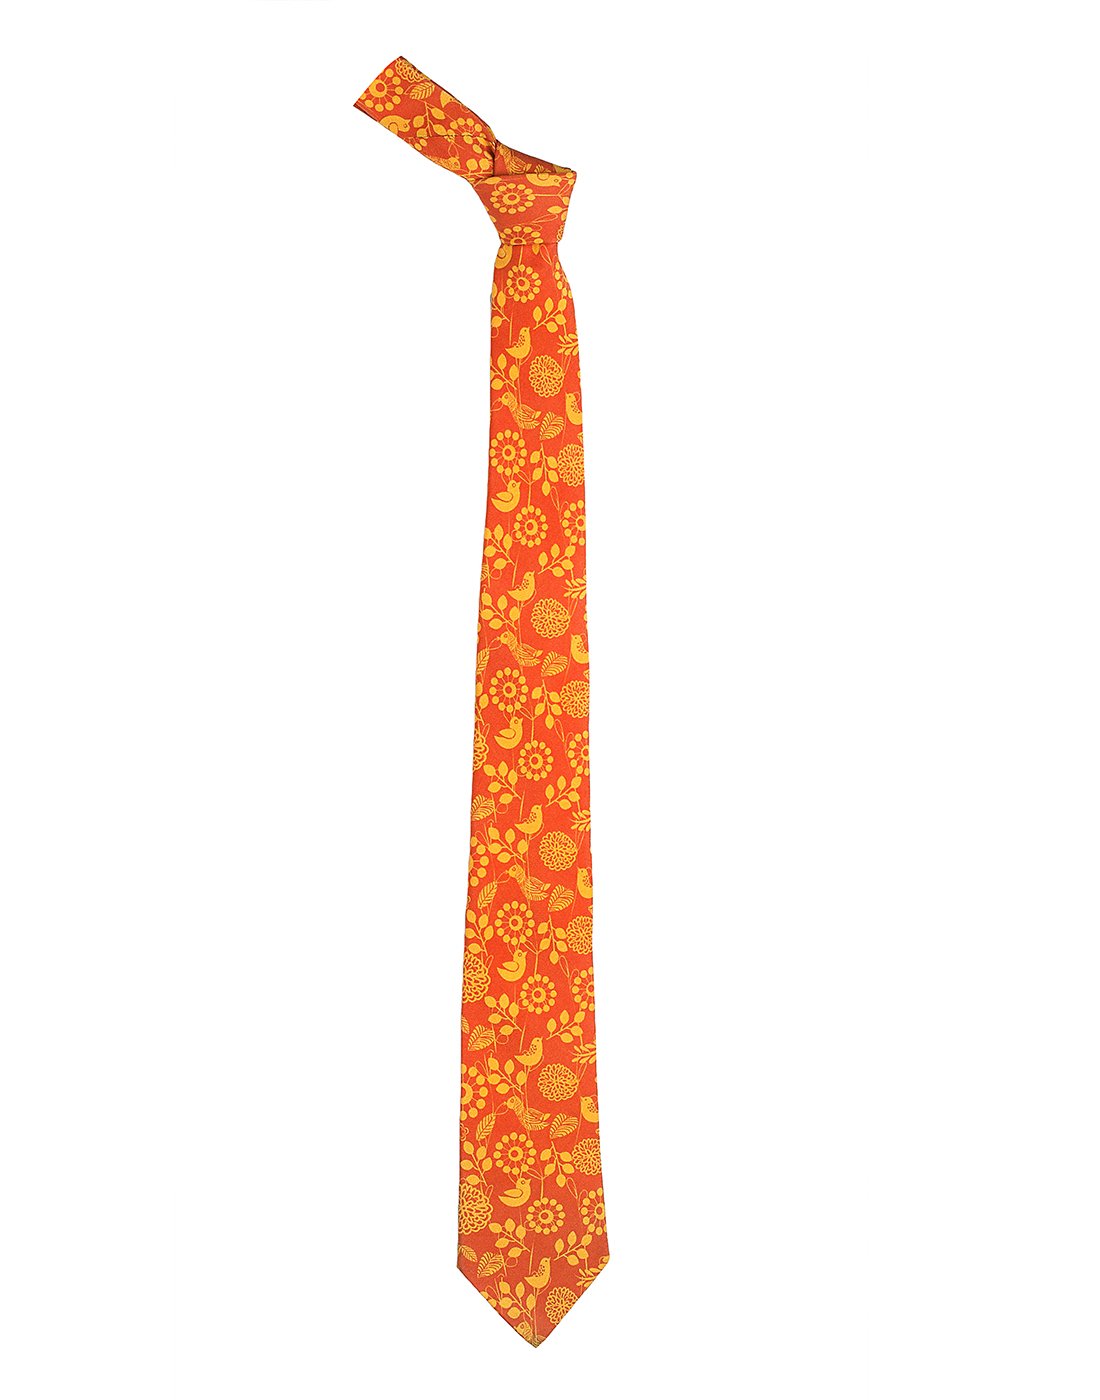 Chokore Orange & Red Silk Tie - Indian at Heart line